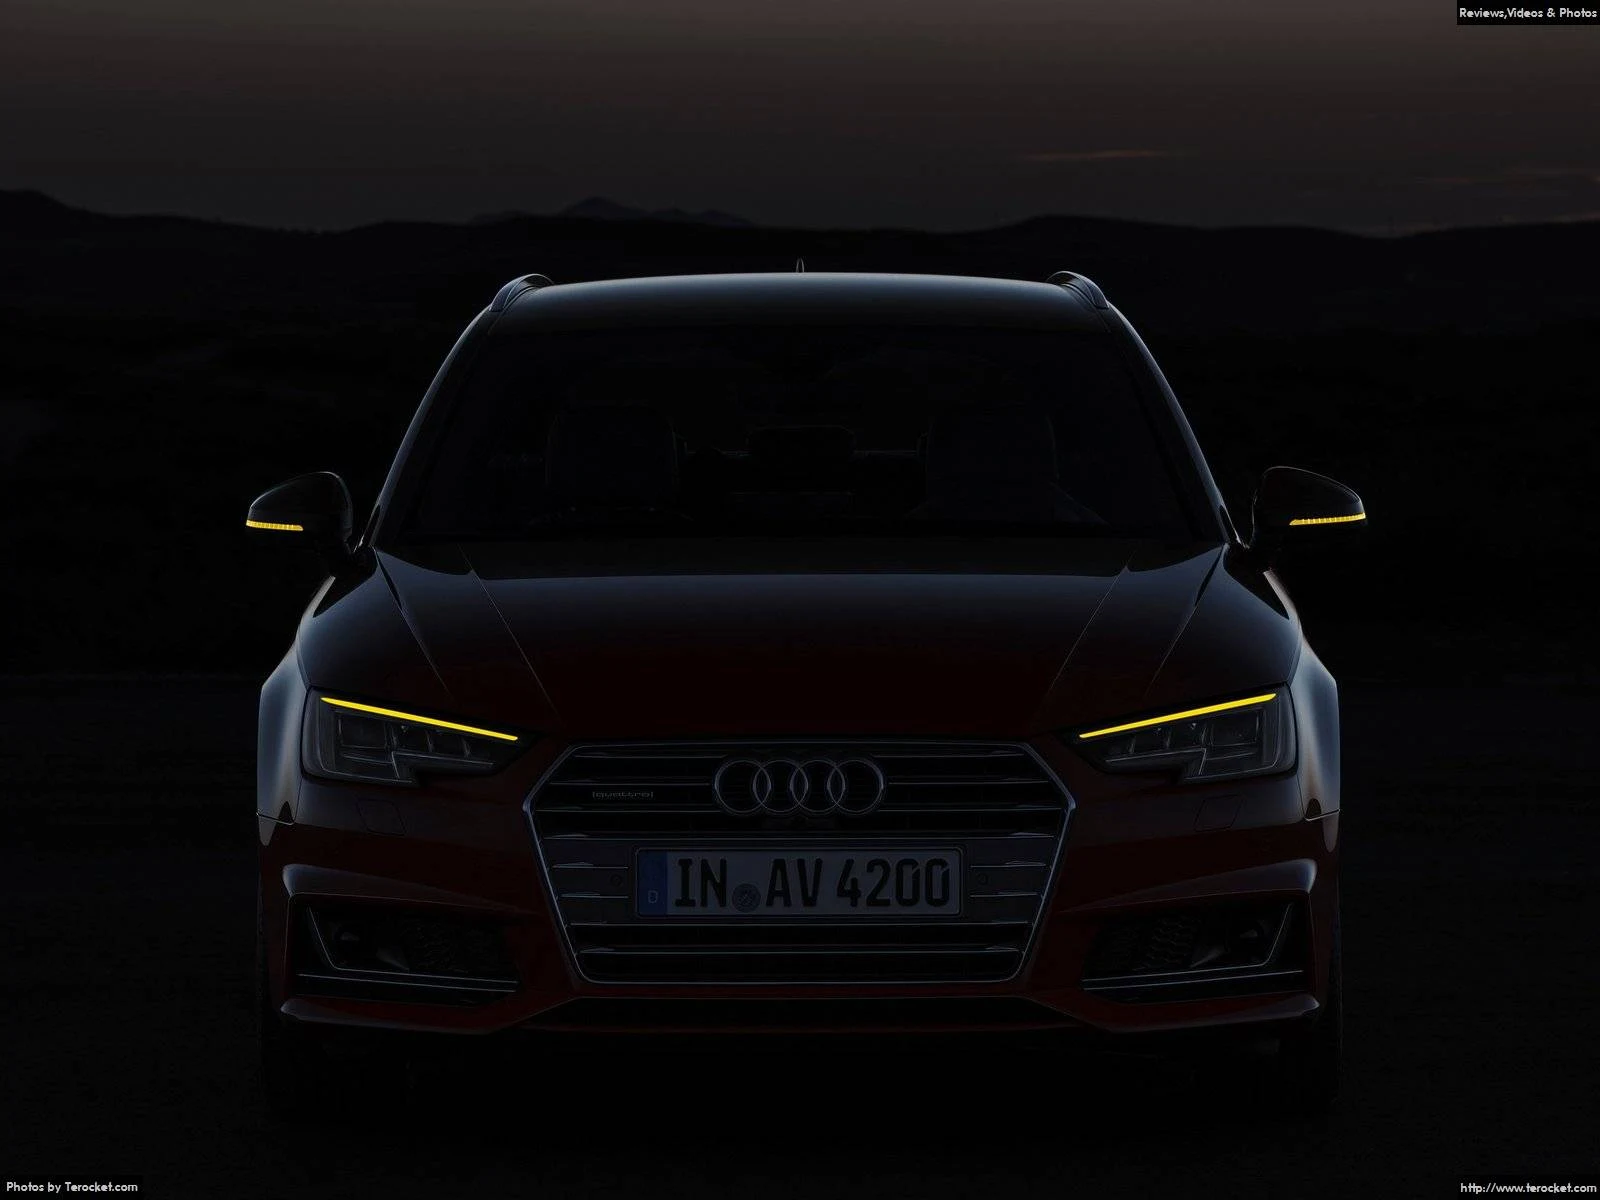 Hình ảnh xe ô tô Audi A4 Avant 2016 & nội ngoại thất